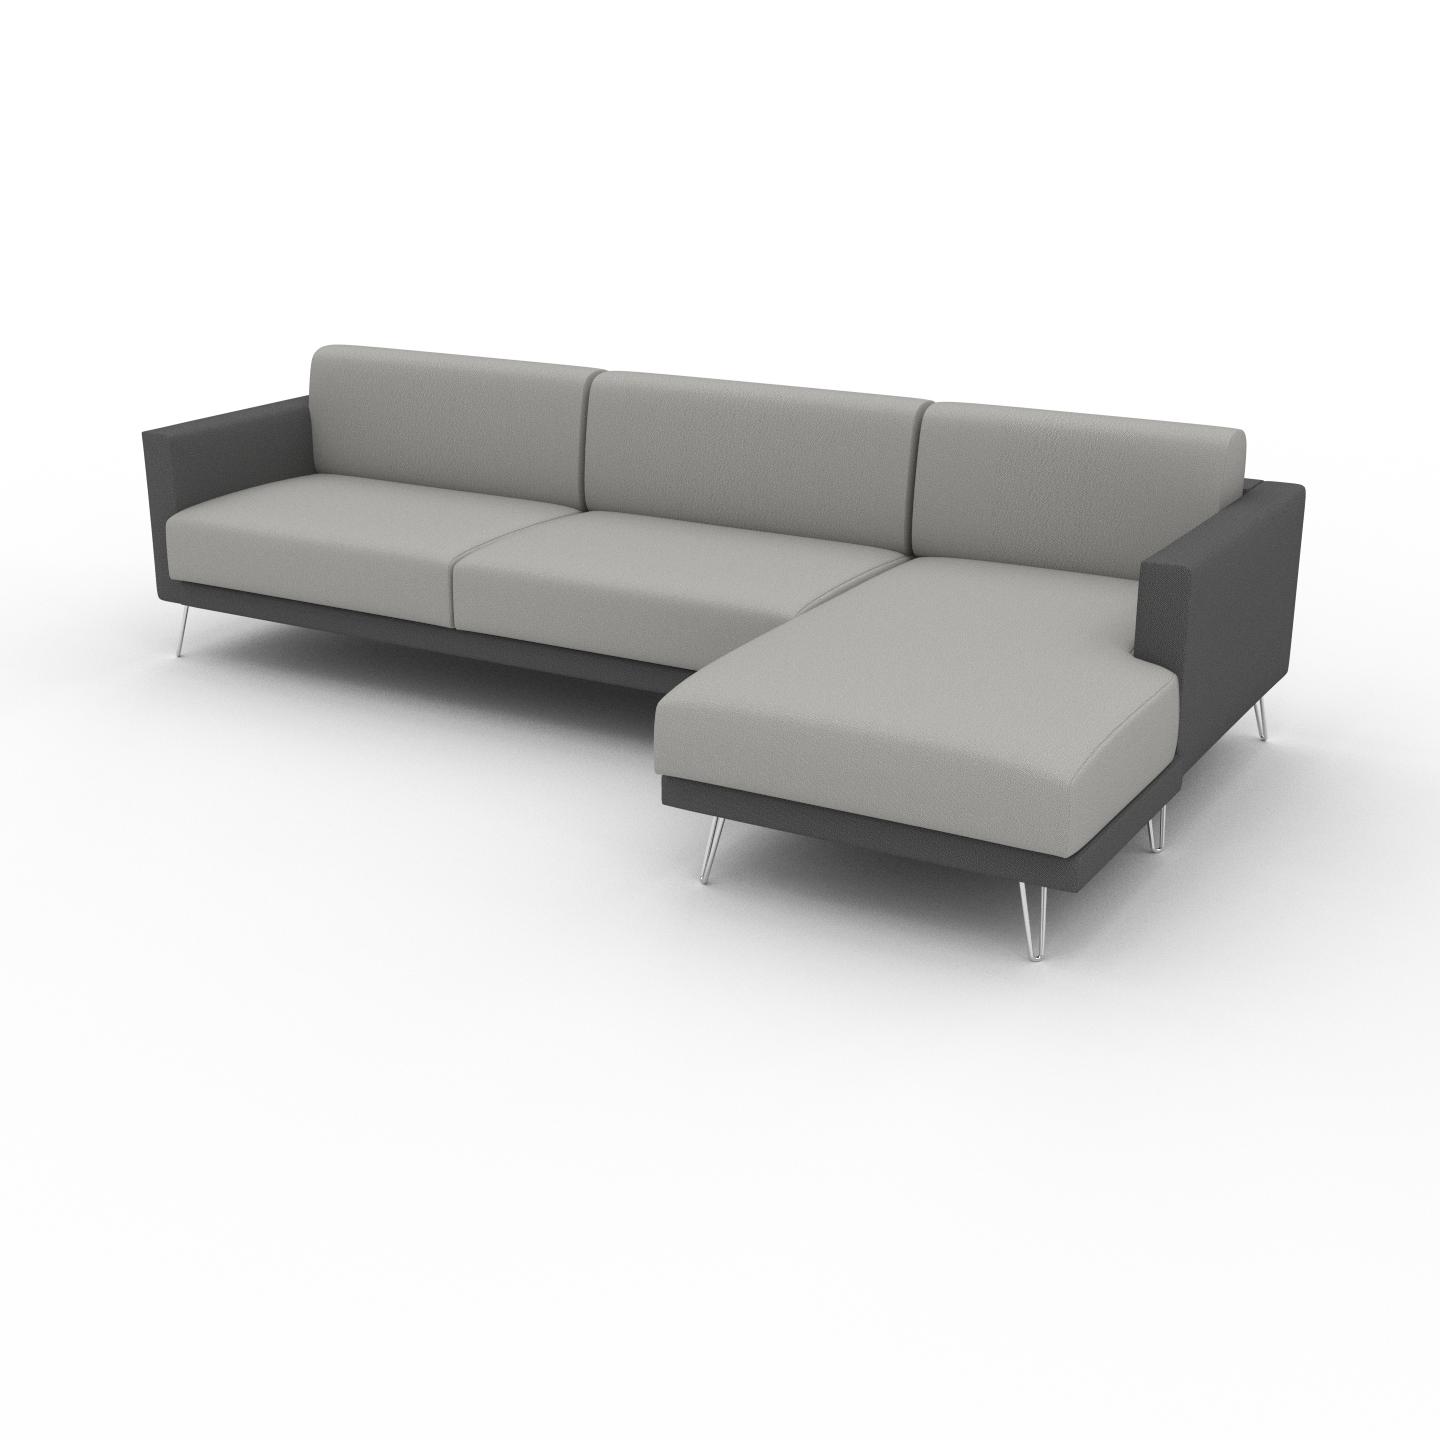 MYCS Ecksofa Sandgrau - Flexible Designer-Polsterecke, L-Form: Beste Qualität, einzigartiges Design - 304 x 81 x 162 cm, konfigurierbar